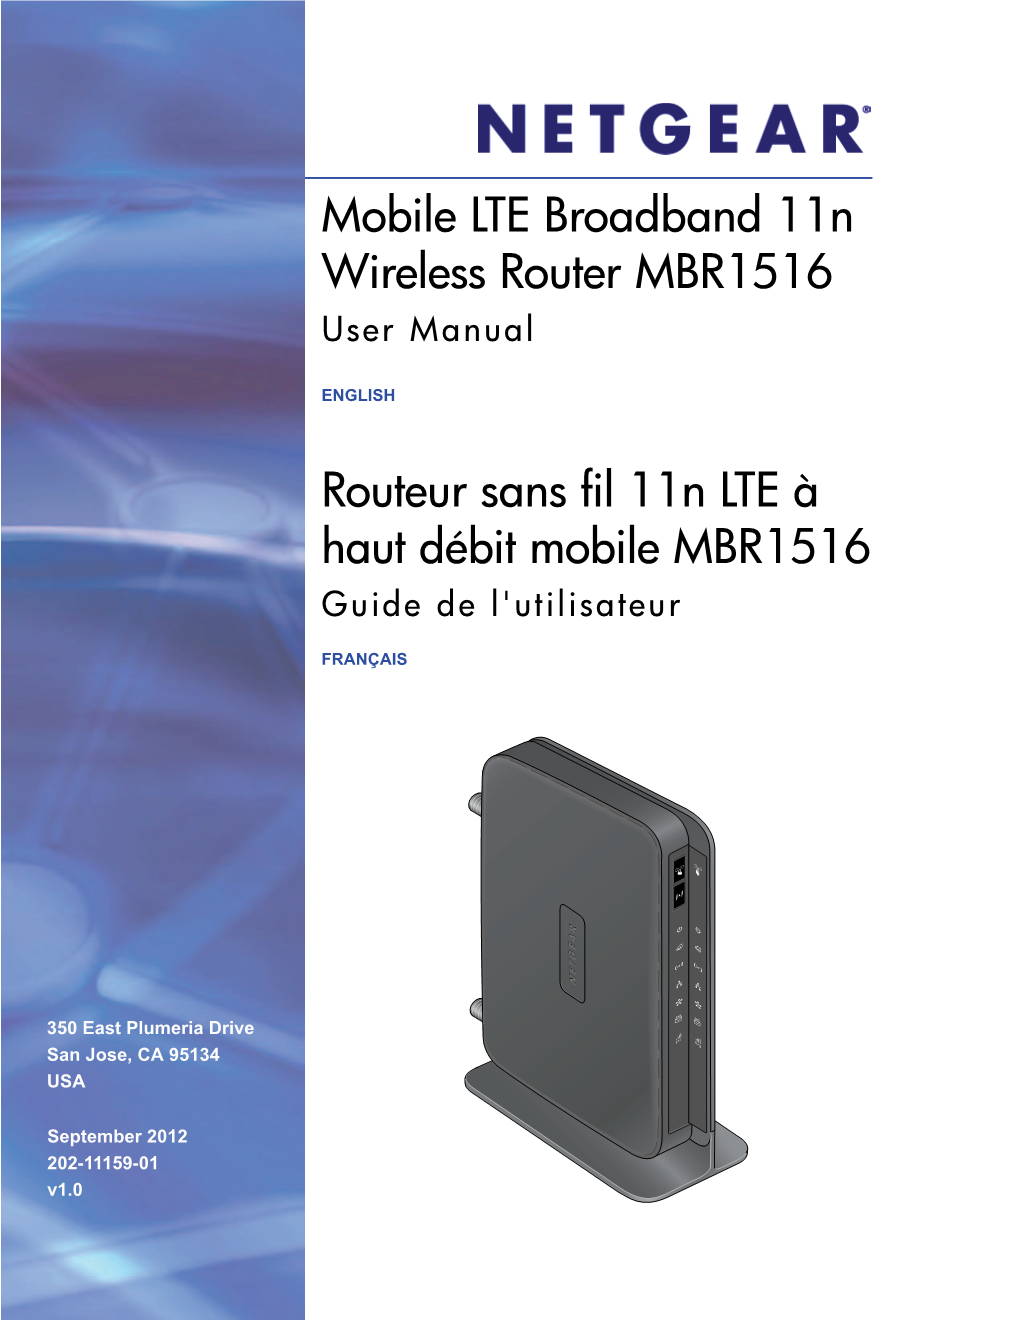 Mobile LTE Broadband 11N Wireless Router MBR1516 Routeur Sans Fil 11N LTE À Haut Débit Mobile MBR1516